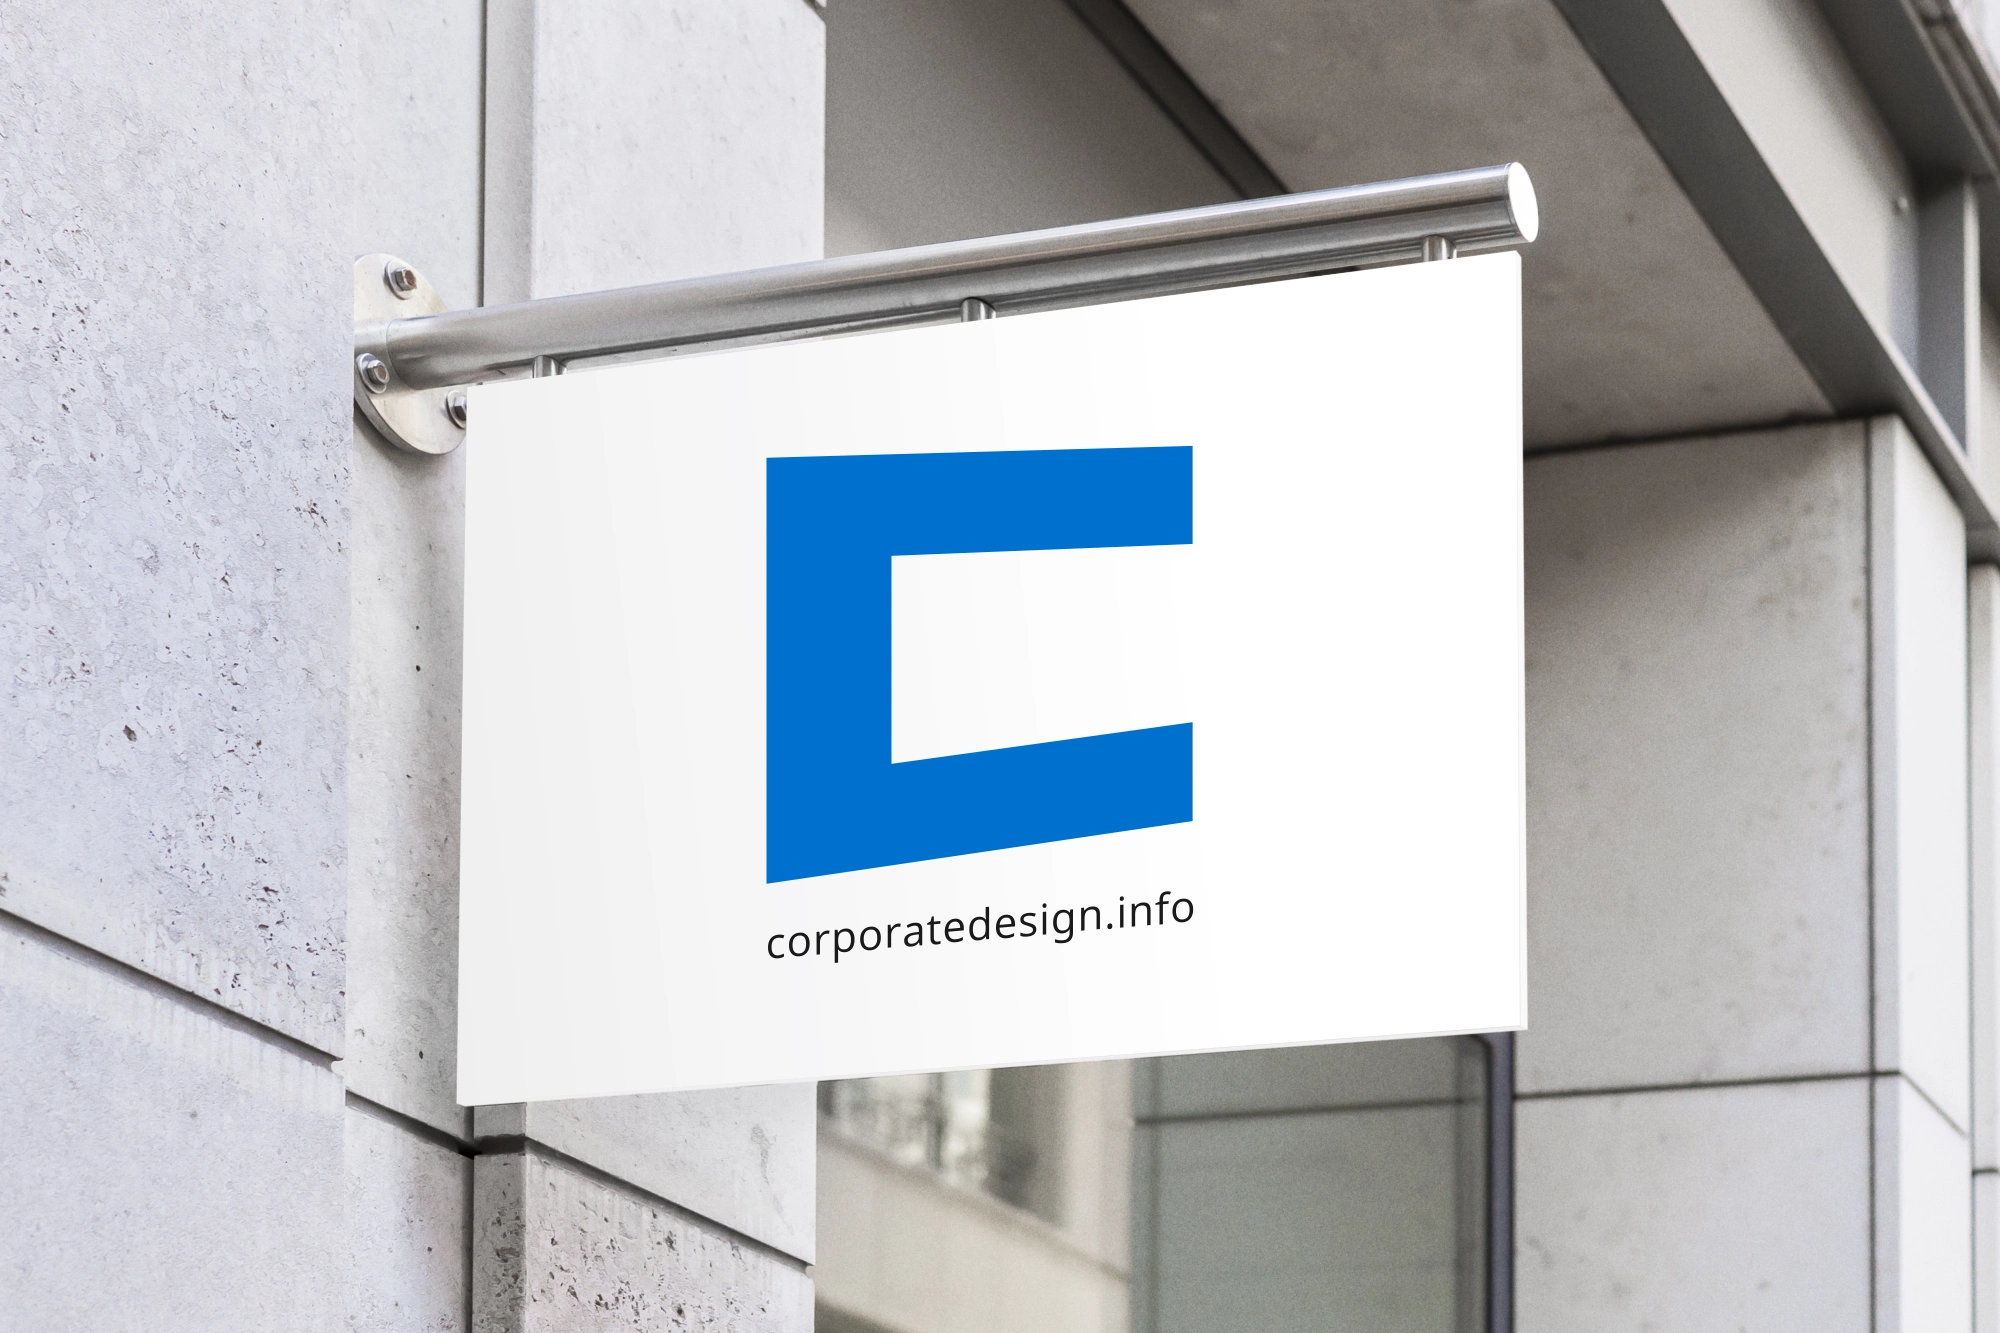 corporatedesign.info - Logo - Schild. Das Logo auf einem Schild auf dem Gebäude.